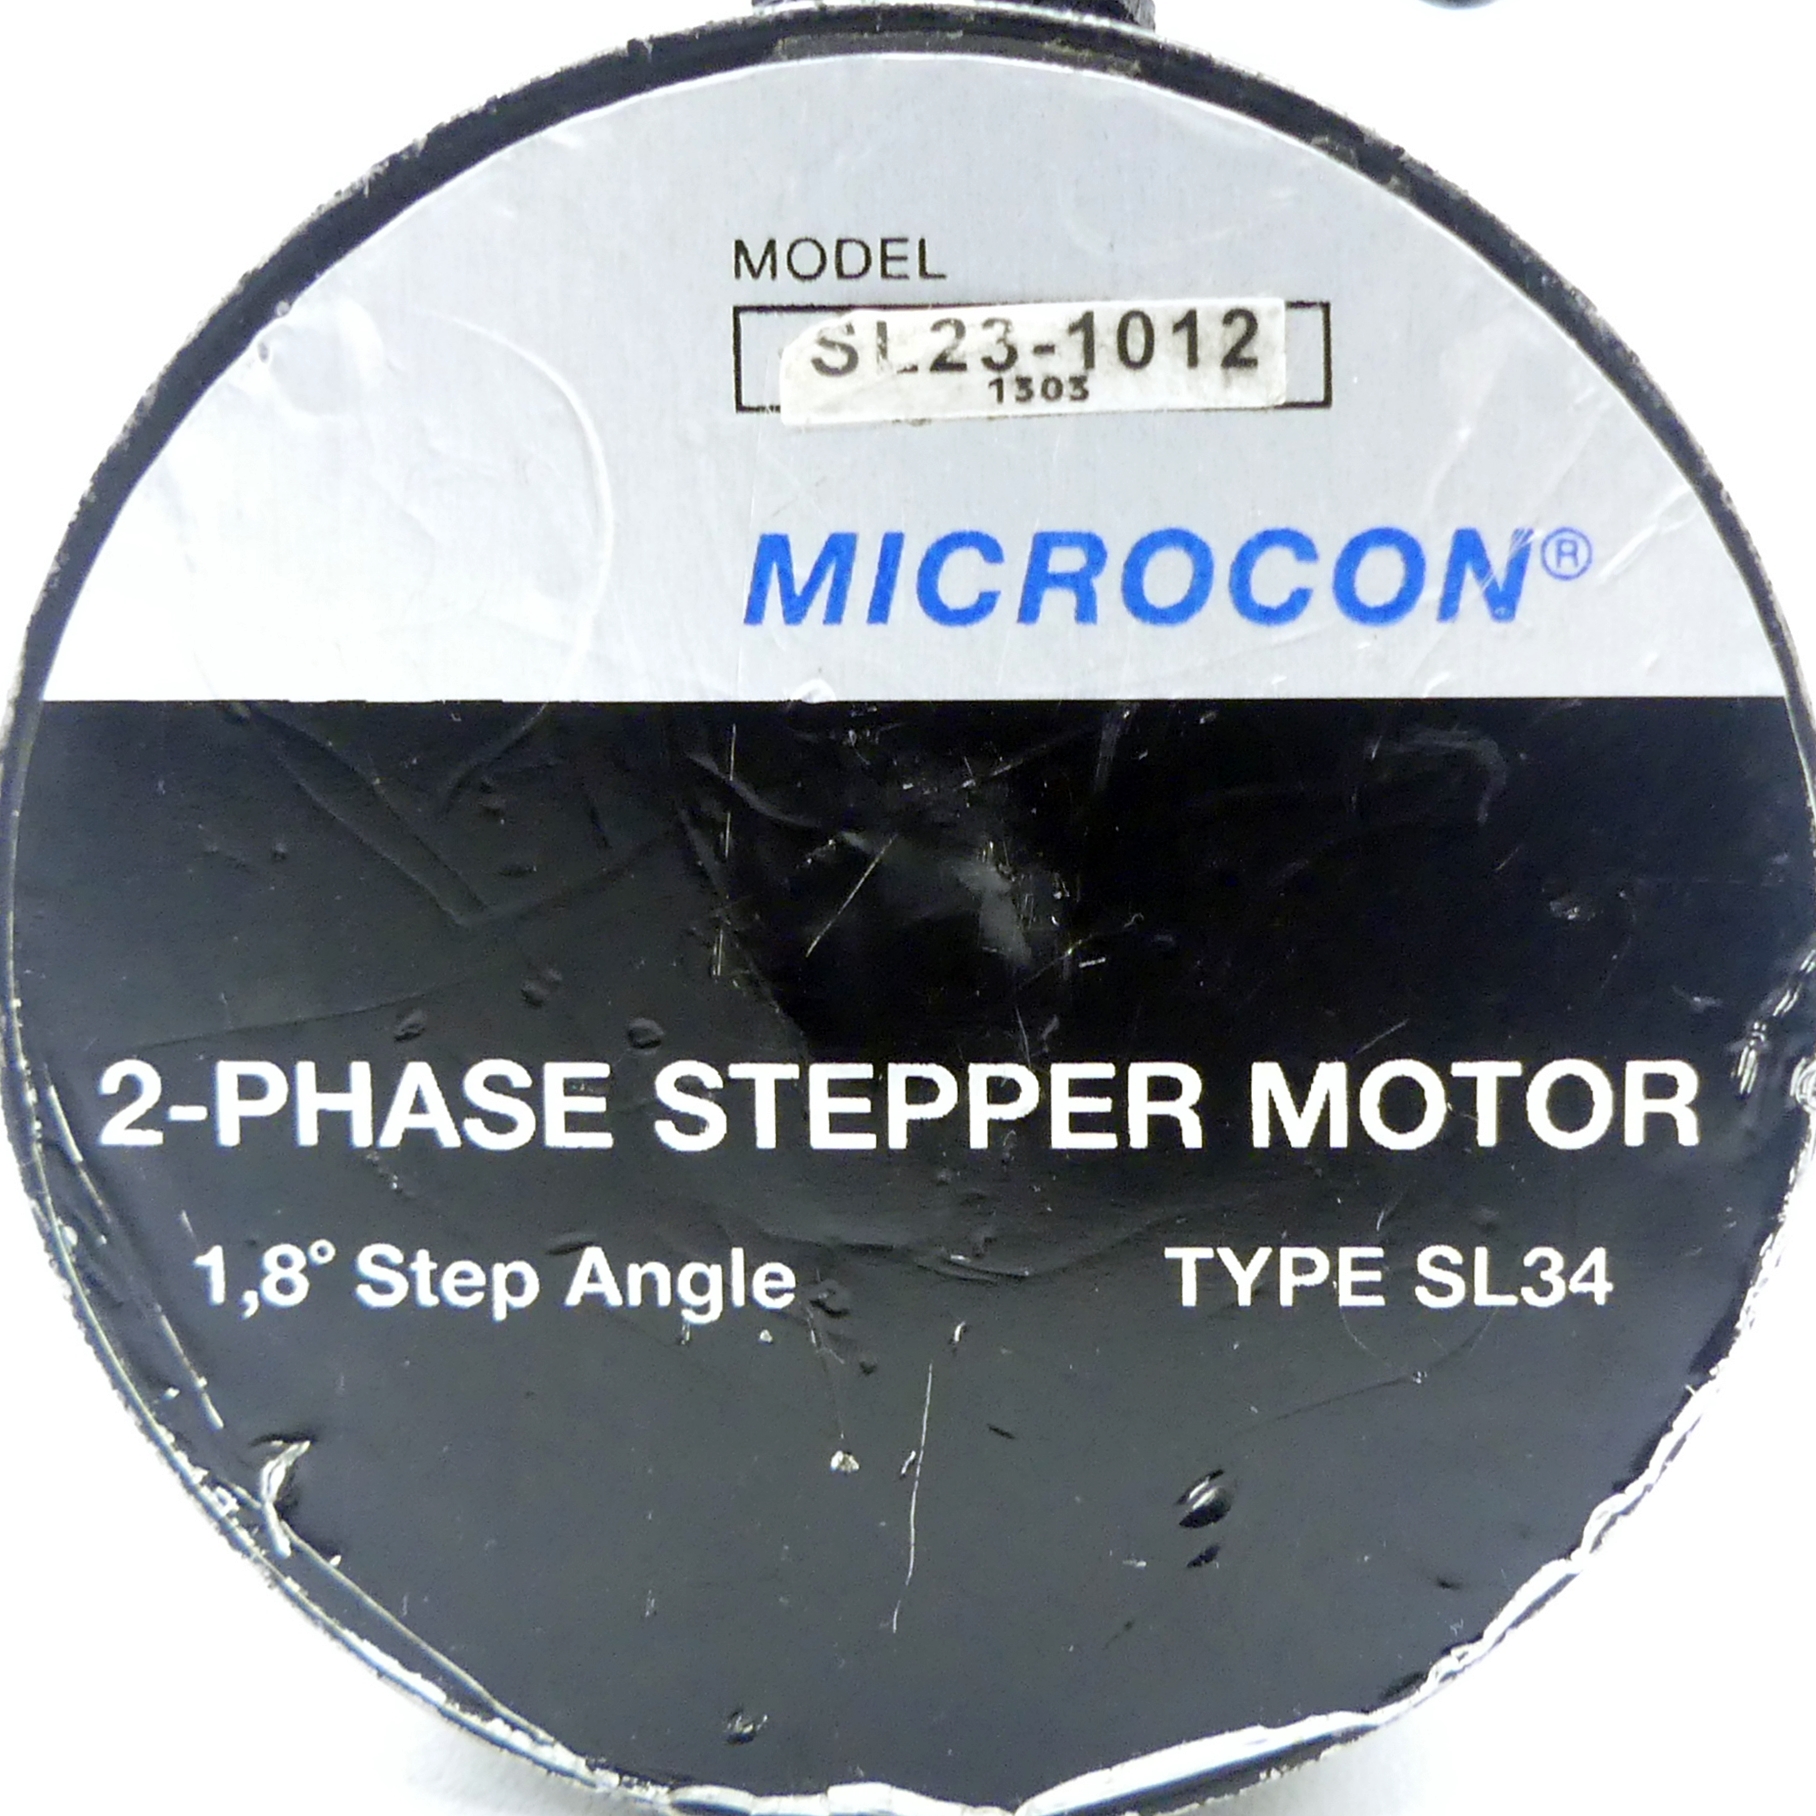 2-Phase Stepper Motor Type SL34 